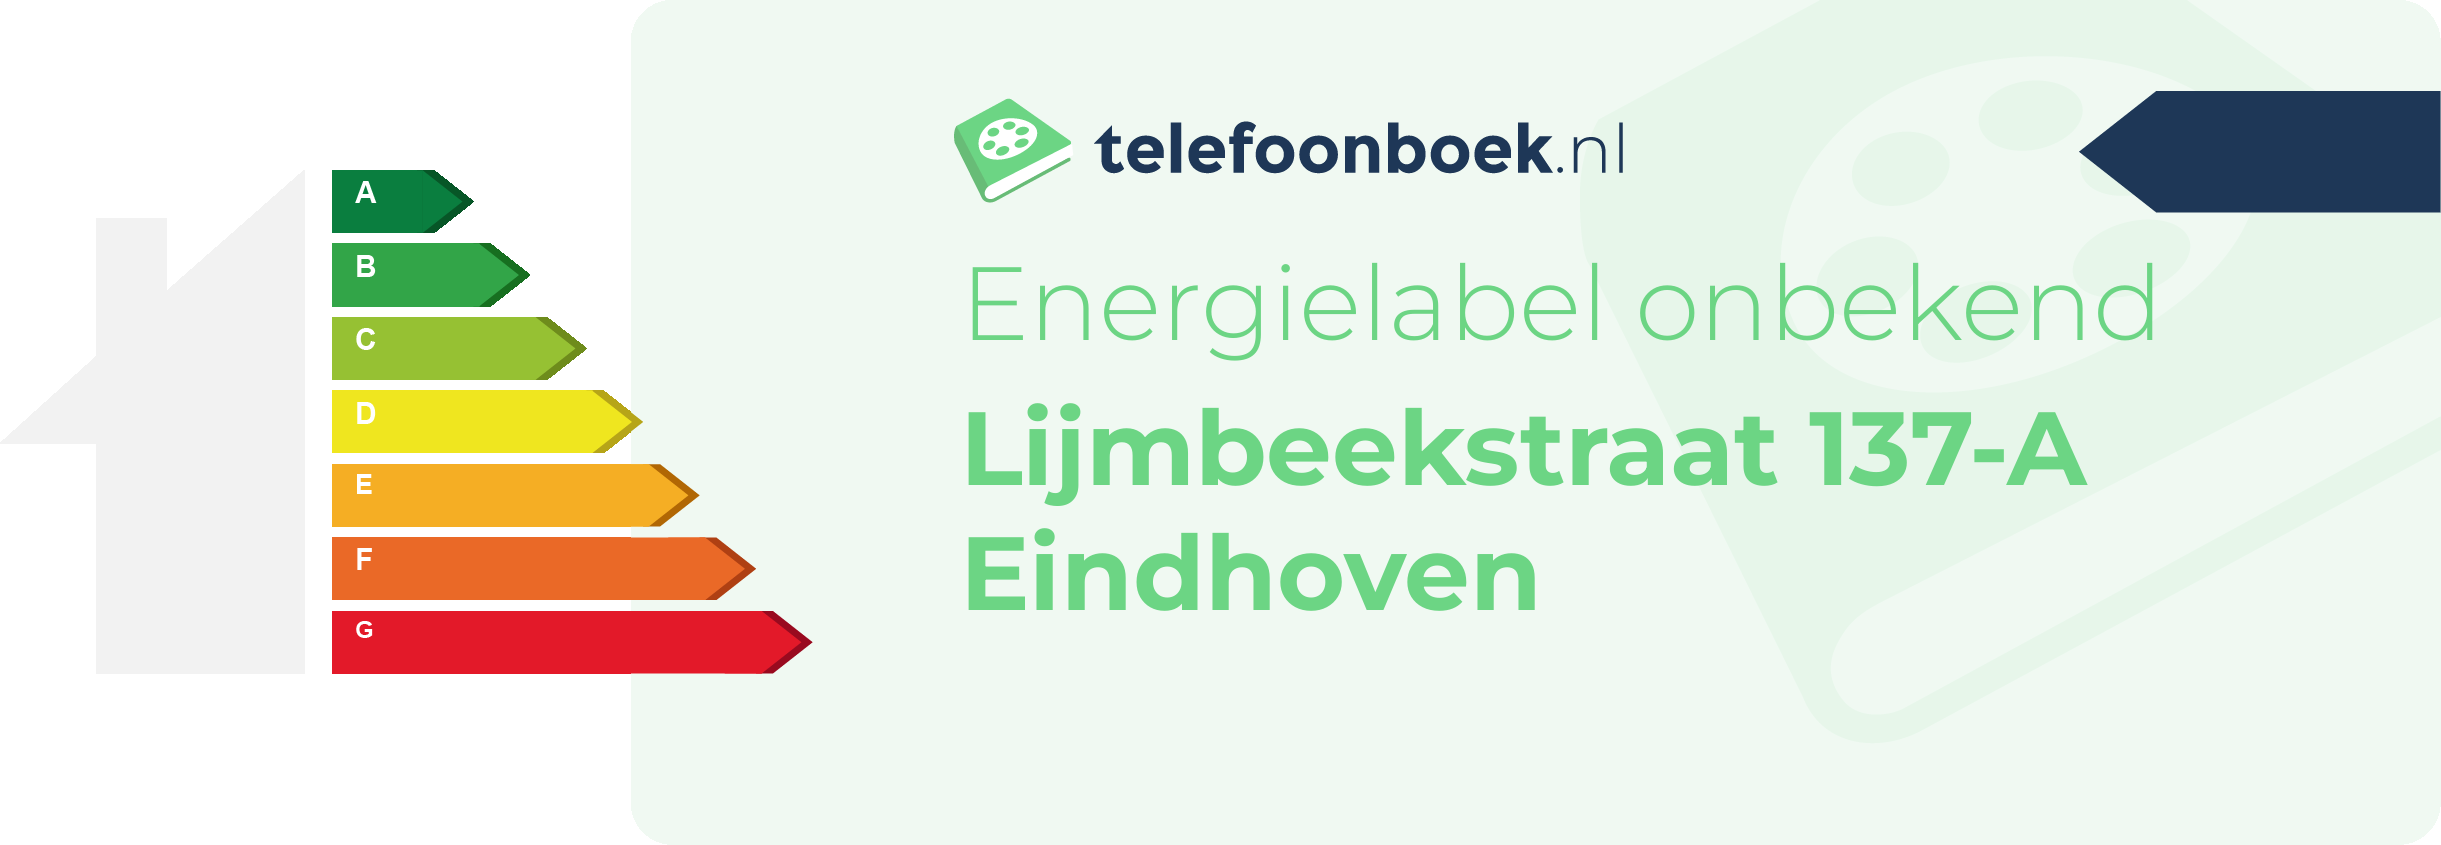 Energielabel Lijmbeekstraat 137-A Eindhoven